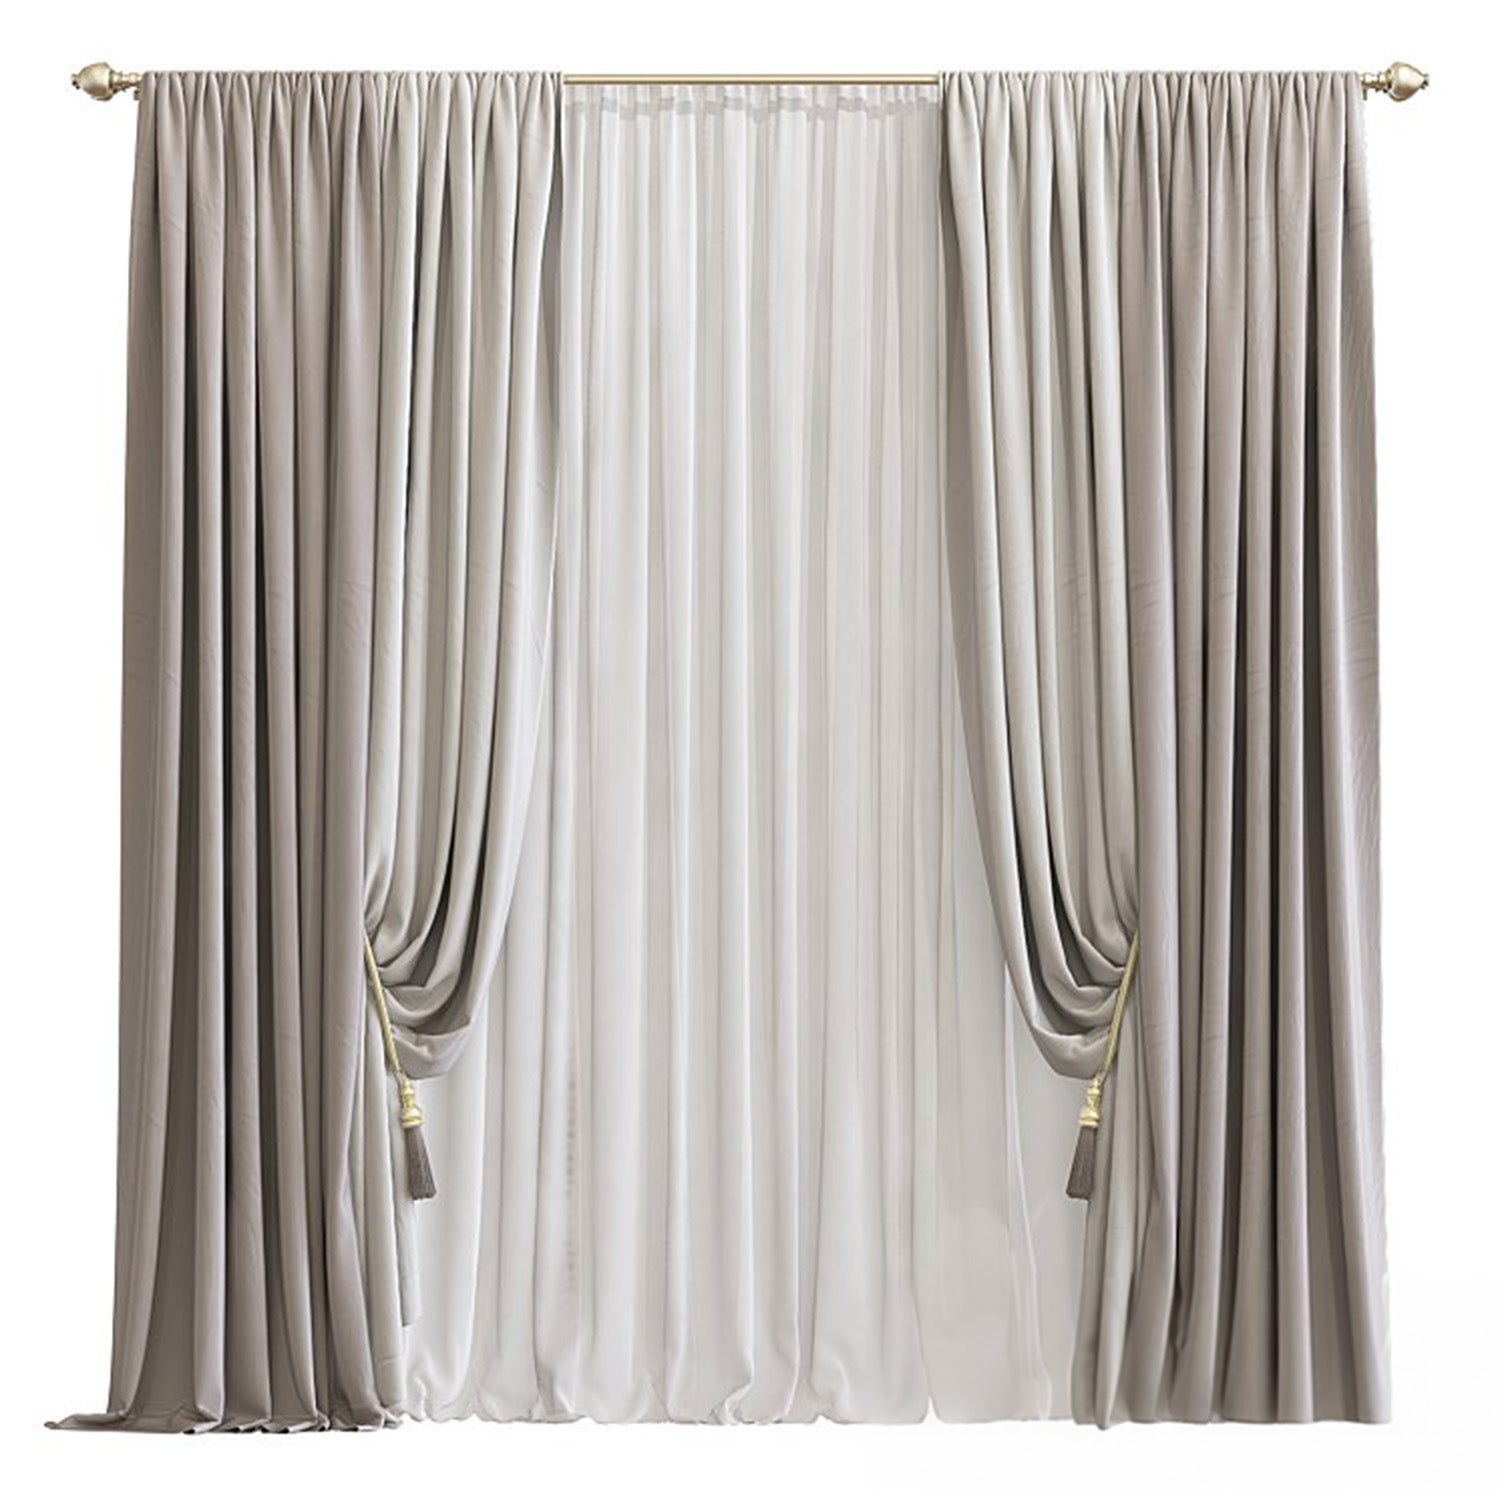 Rustic Curtain